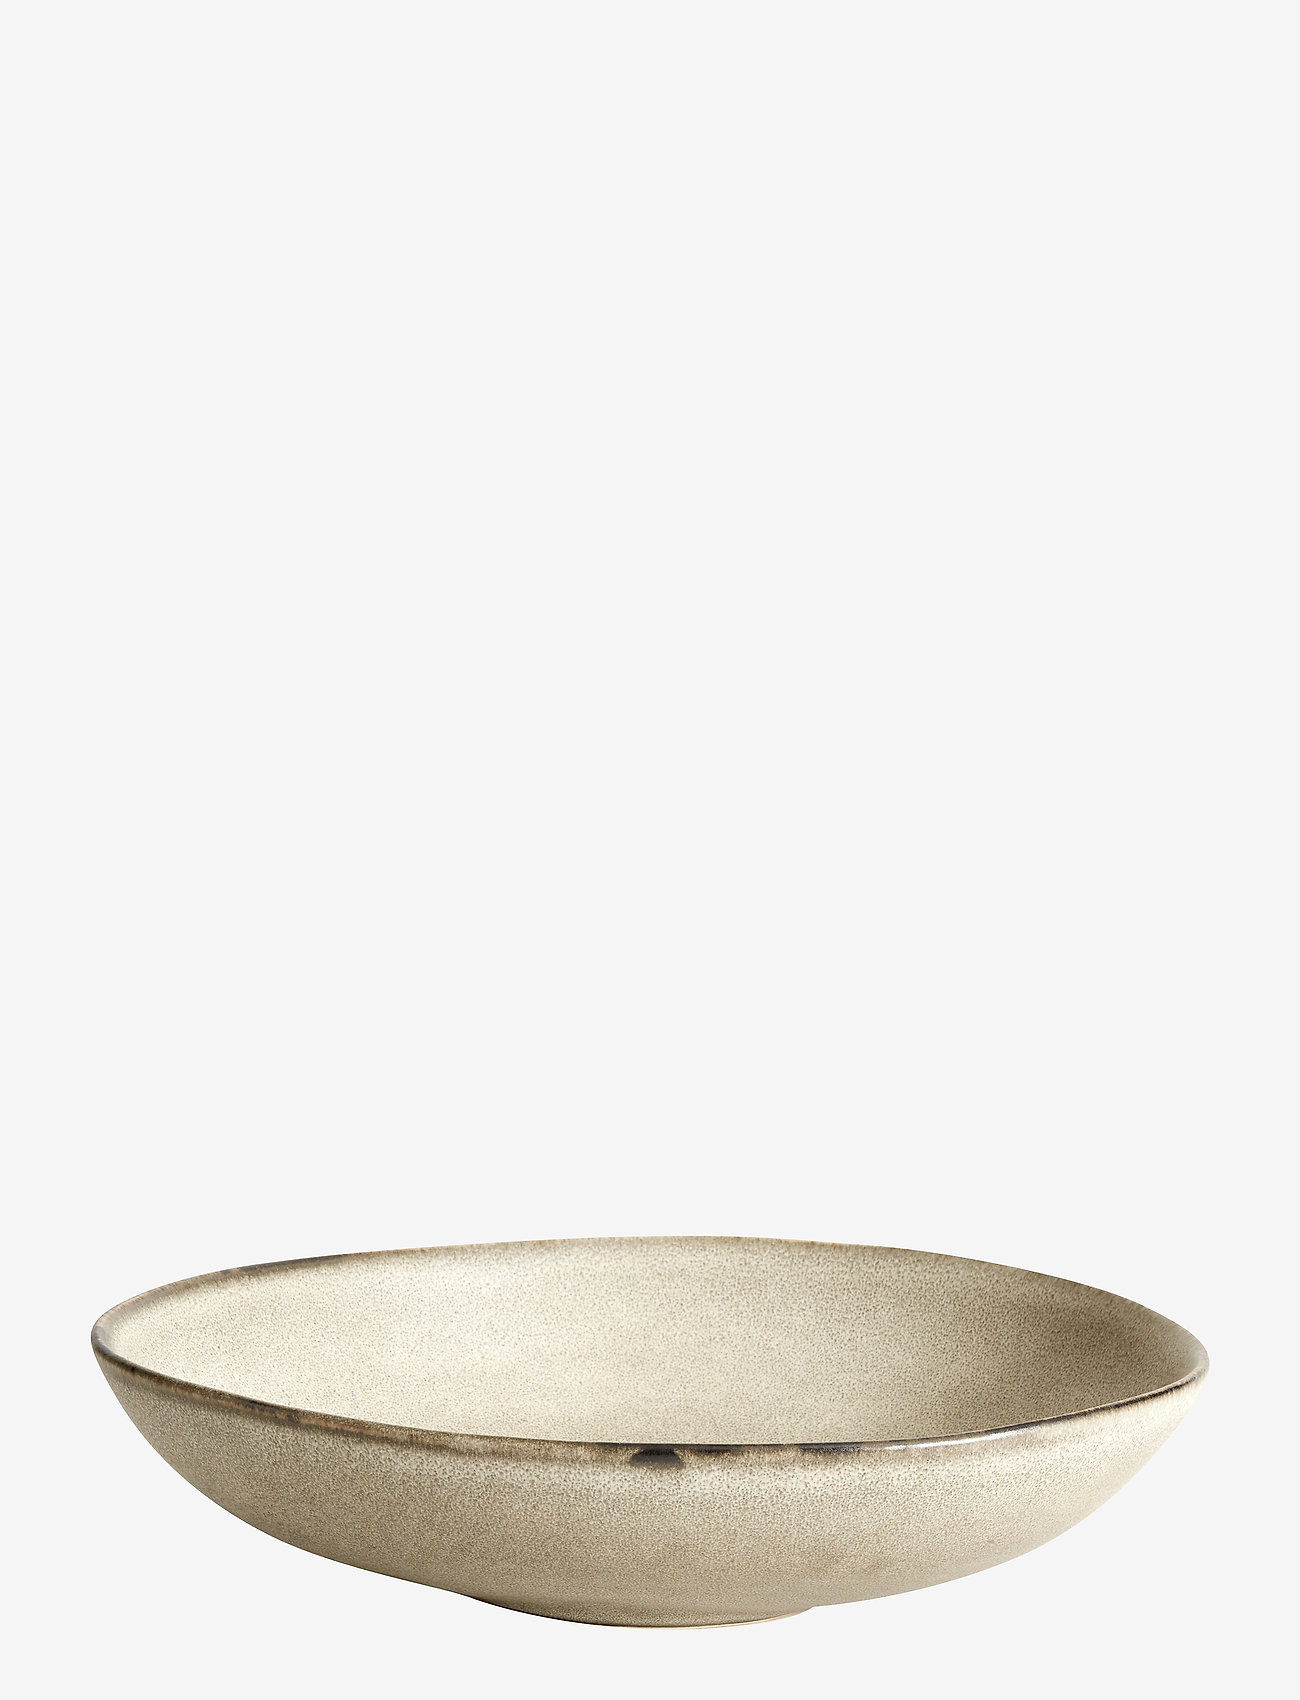 Muubs - Serving bowl Mame - madalaimad hinnad - Østers - 0